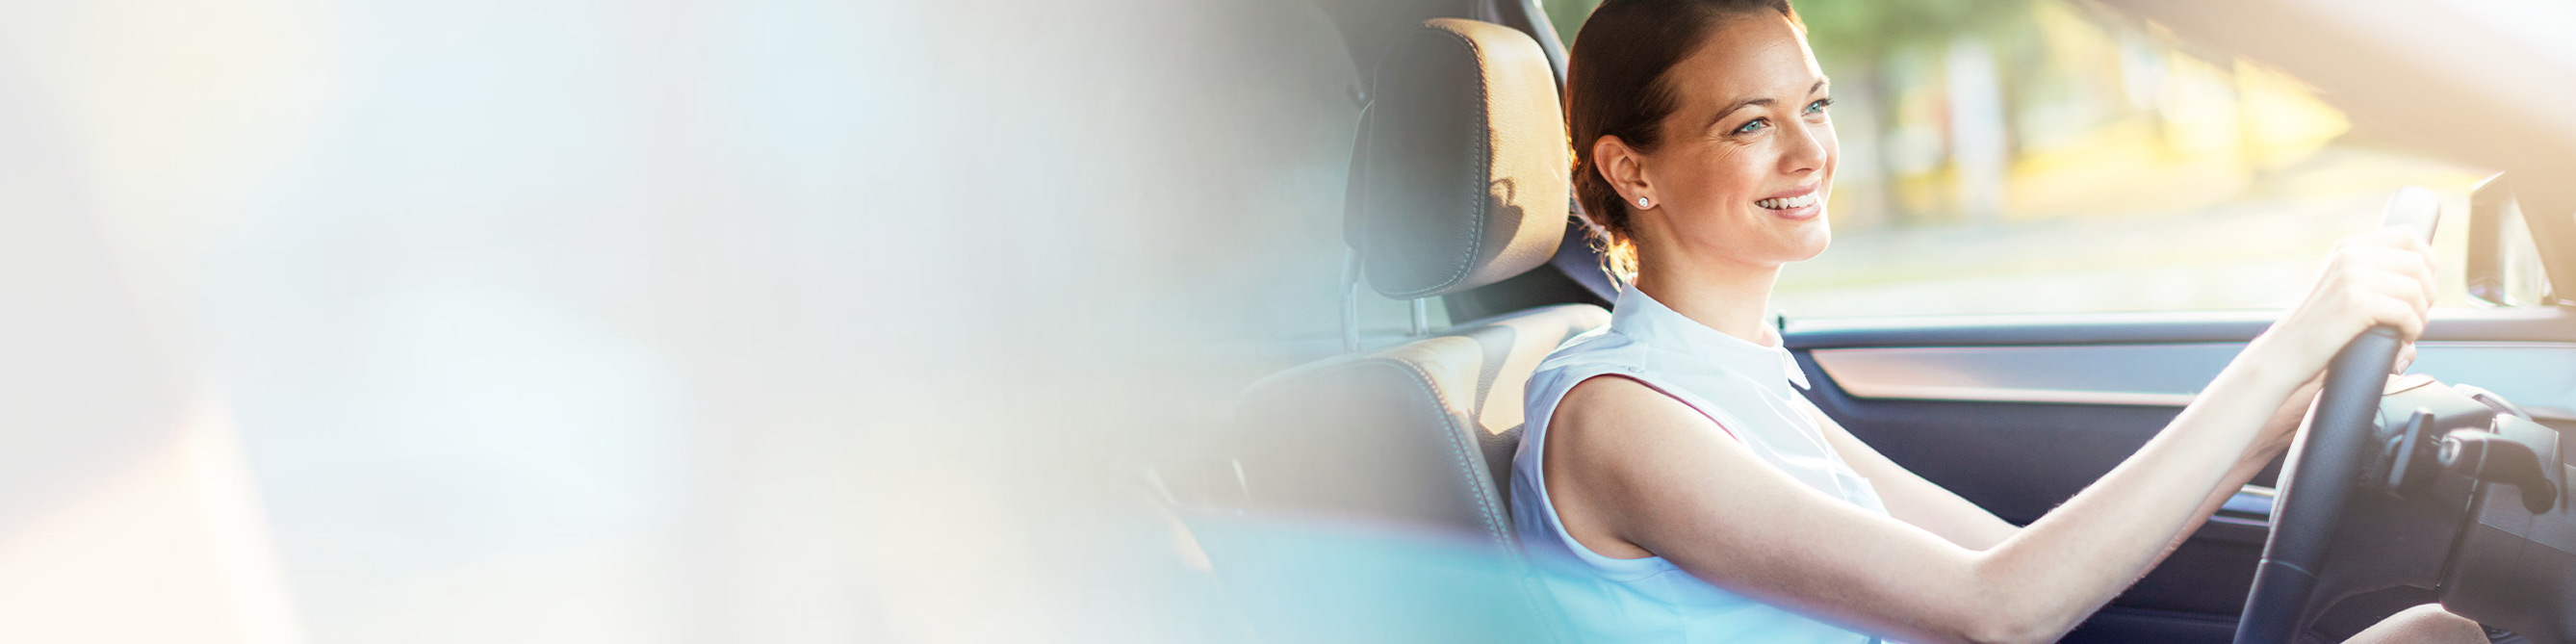 ÖRAG Verkehrs-Rechtsschutzversicherung: Lächelnde Frau im Auto